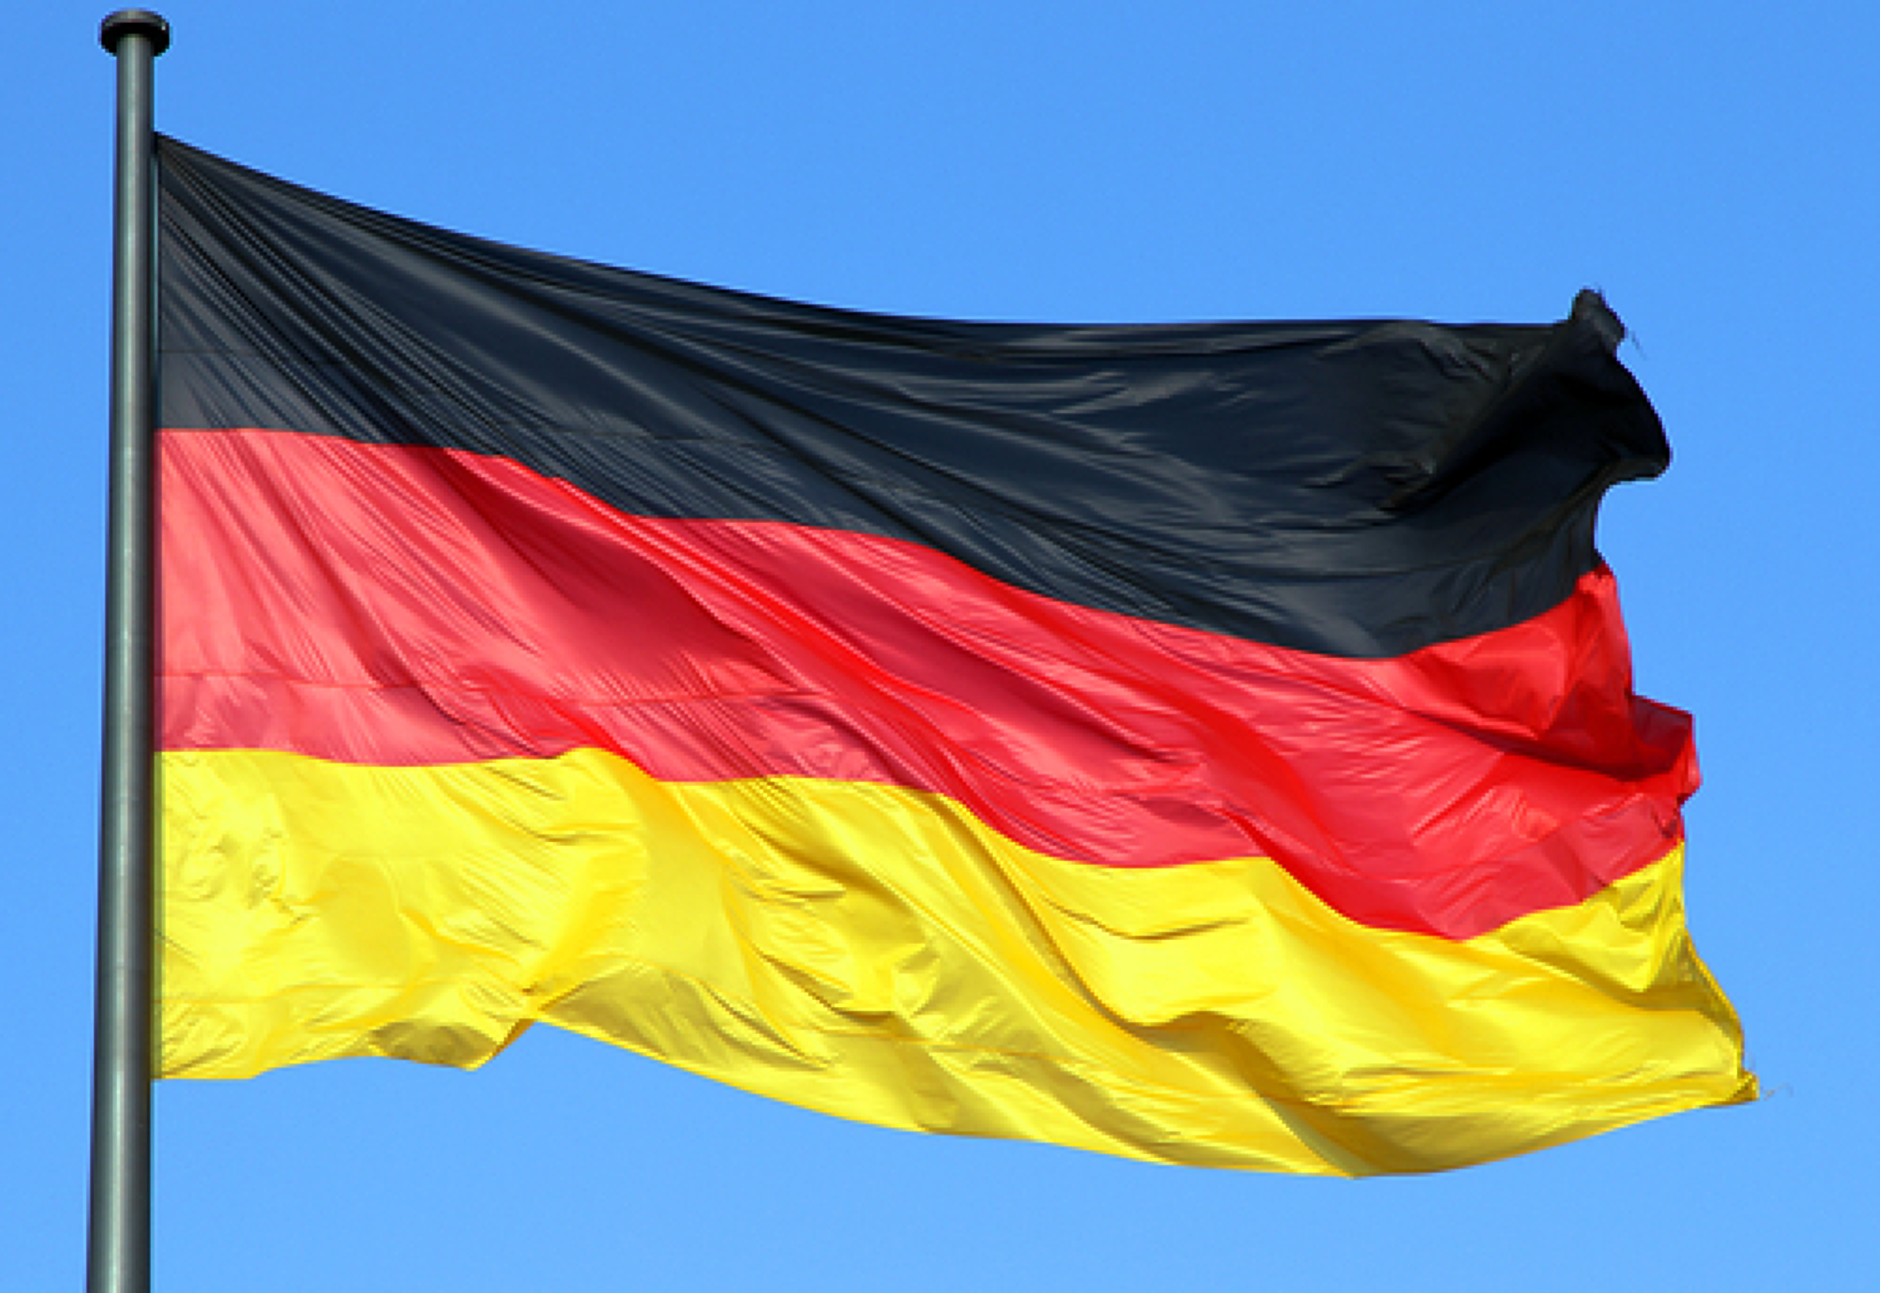 Близо 2/3 от германците искат ново правителство, показва проучване